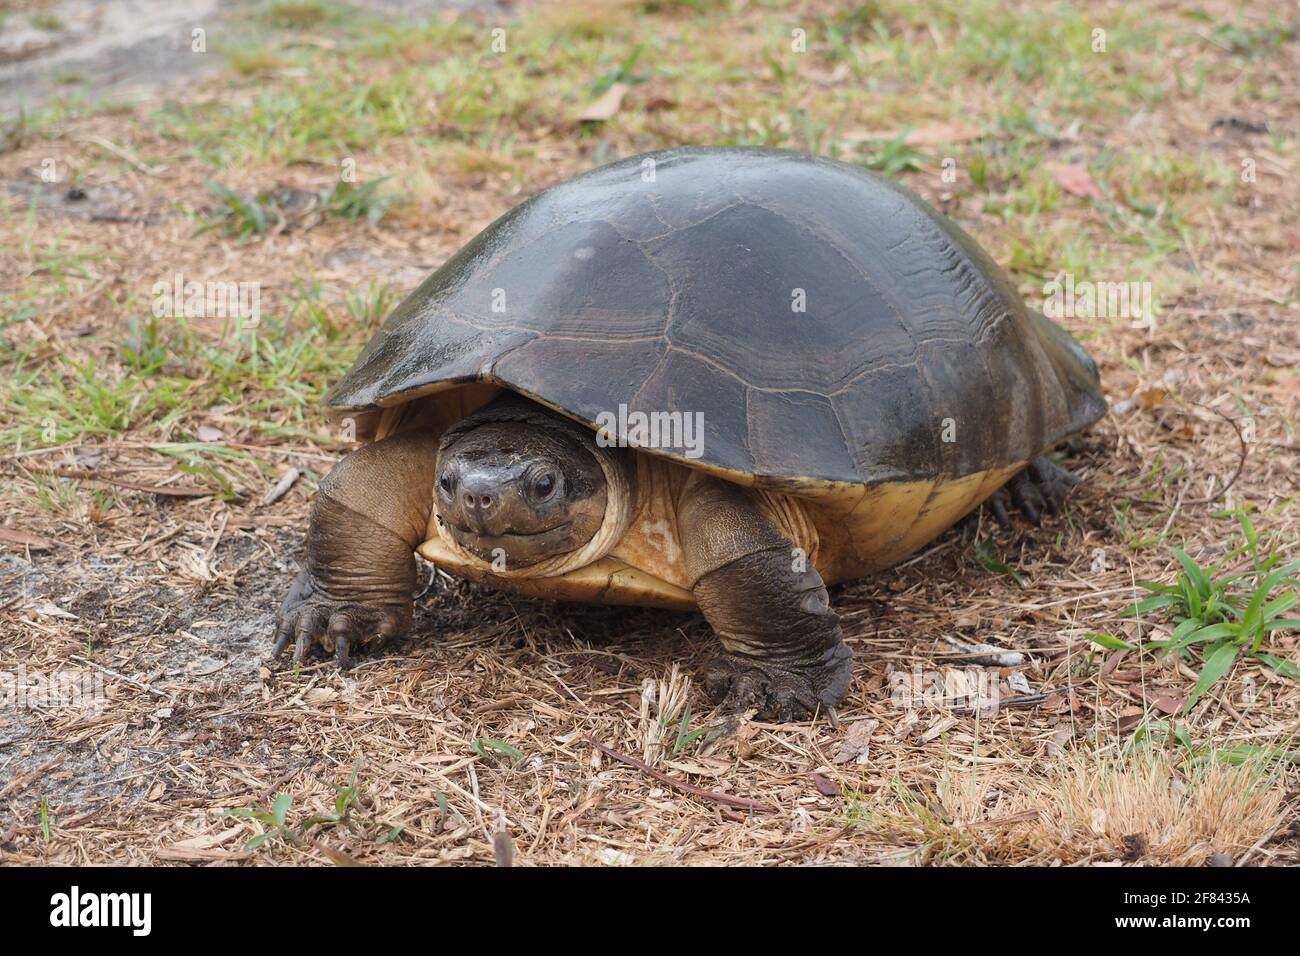 La tortue géante malaisienne ou la tortue de la rivière Bornean (Orlitia borneensis) Banque D'Images